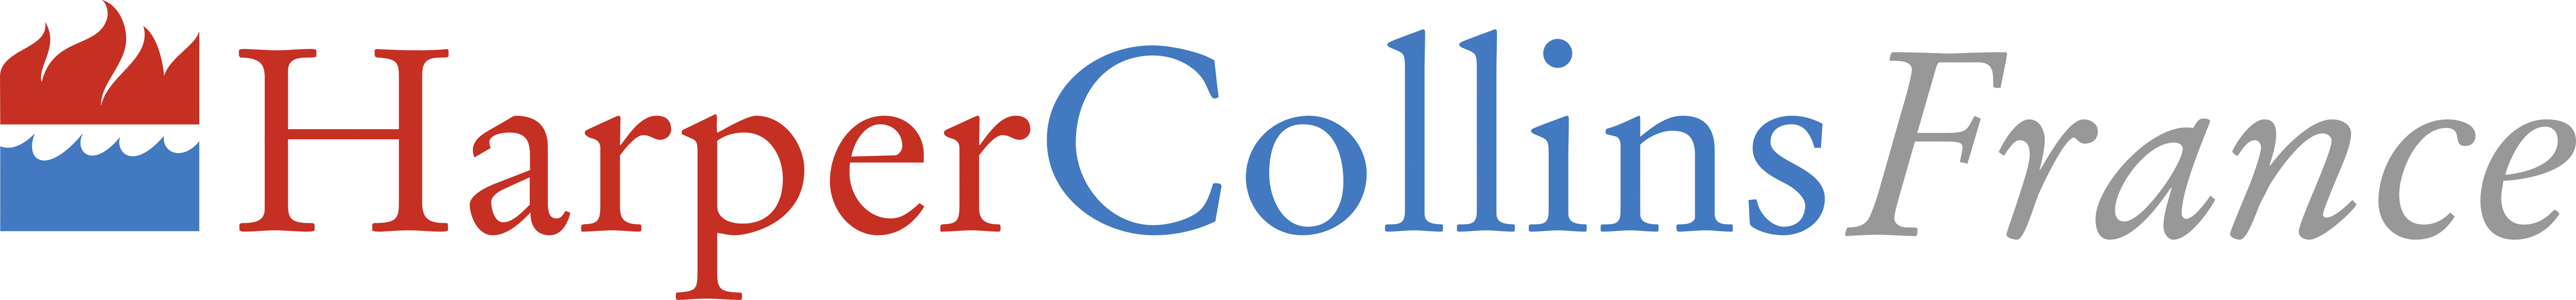 HARPER_COLLINS_FRANCE_logo.png